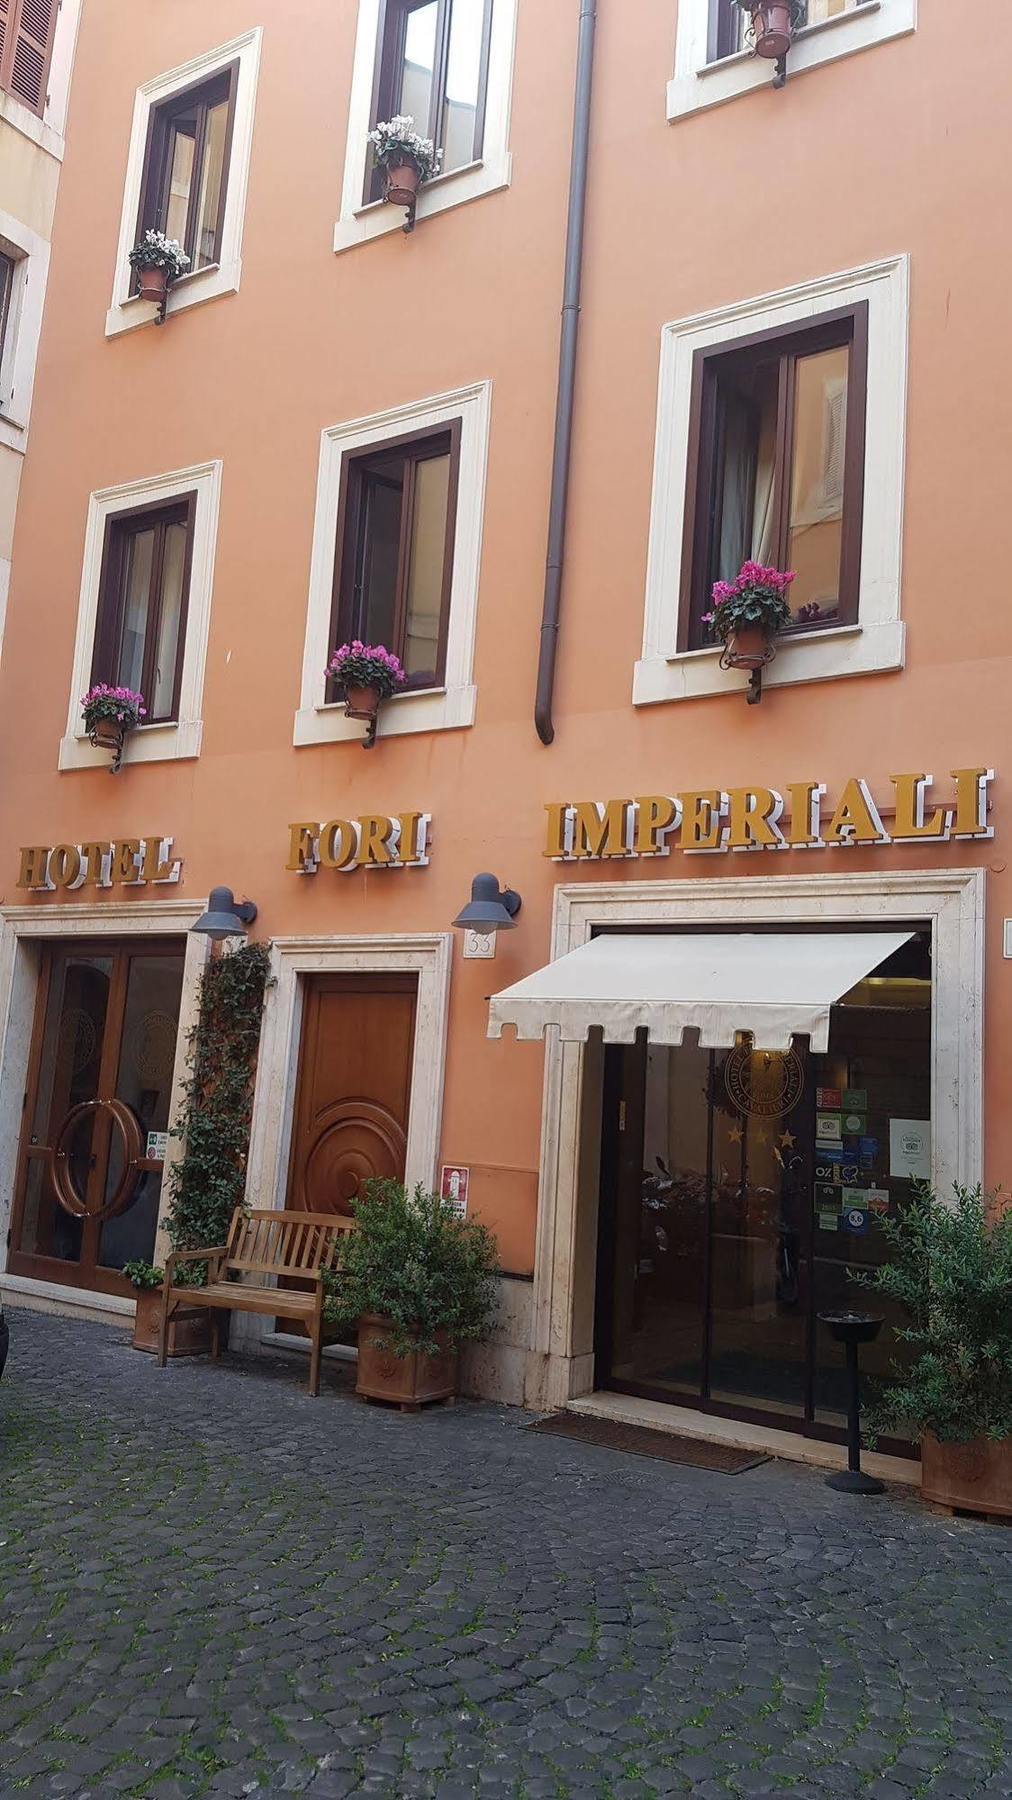 Hotel Fori Imperiali Cavalieri Roma Exterior foto